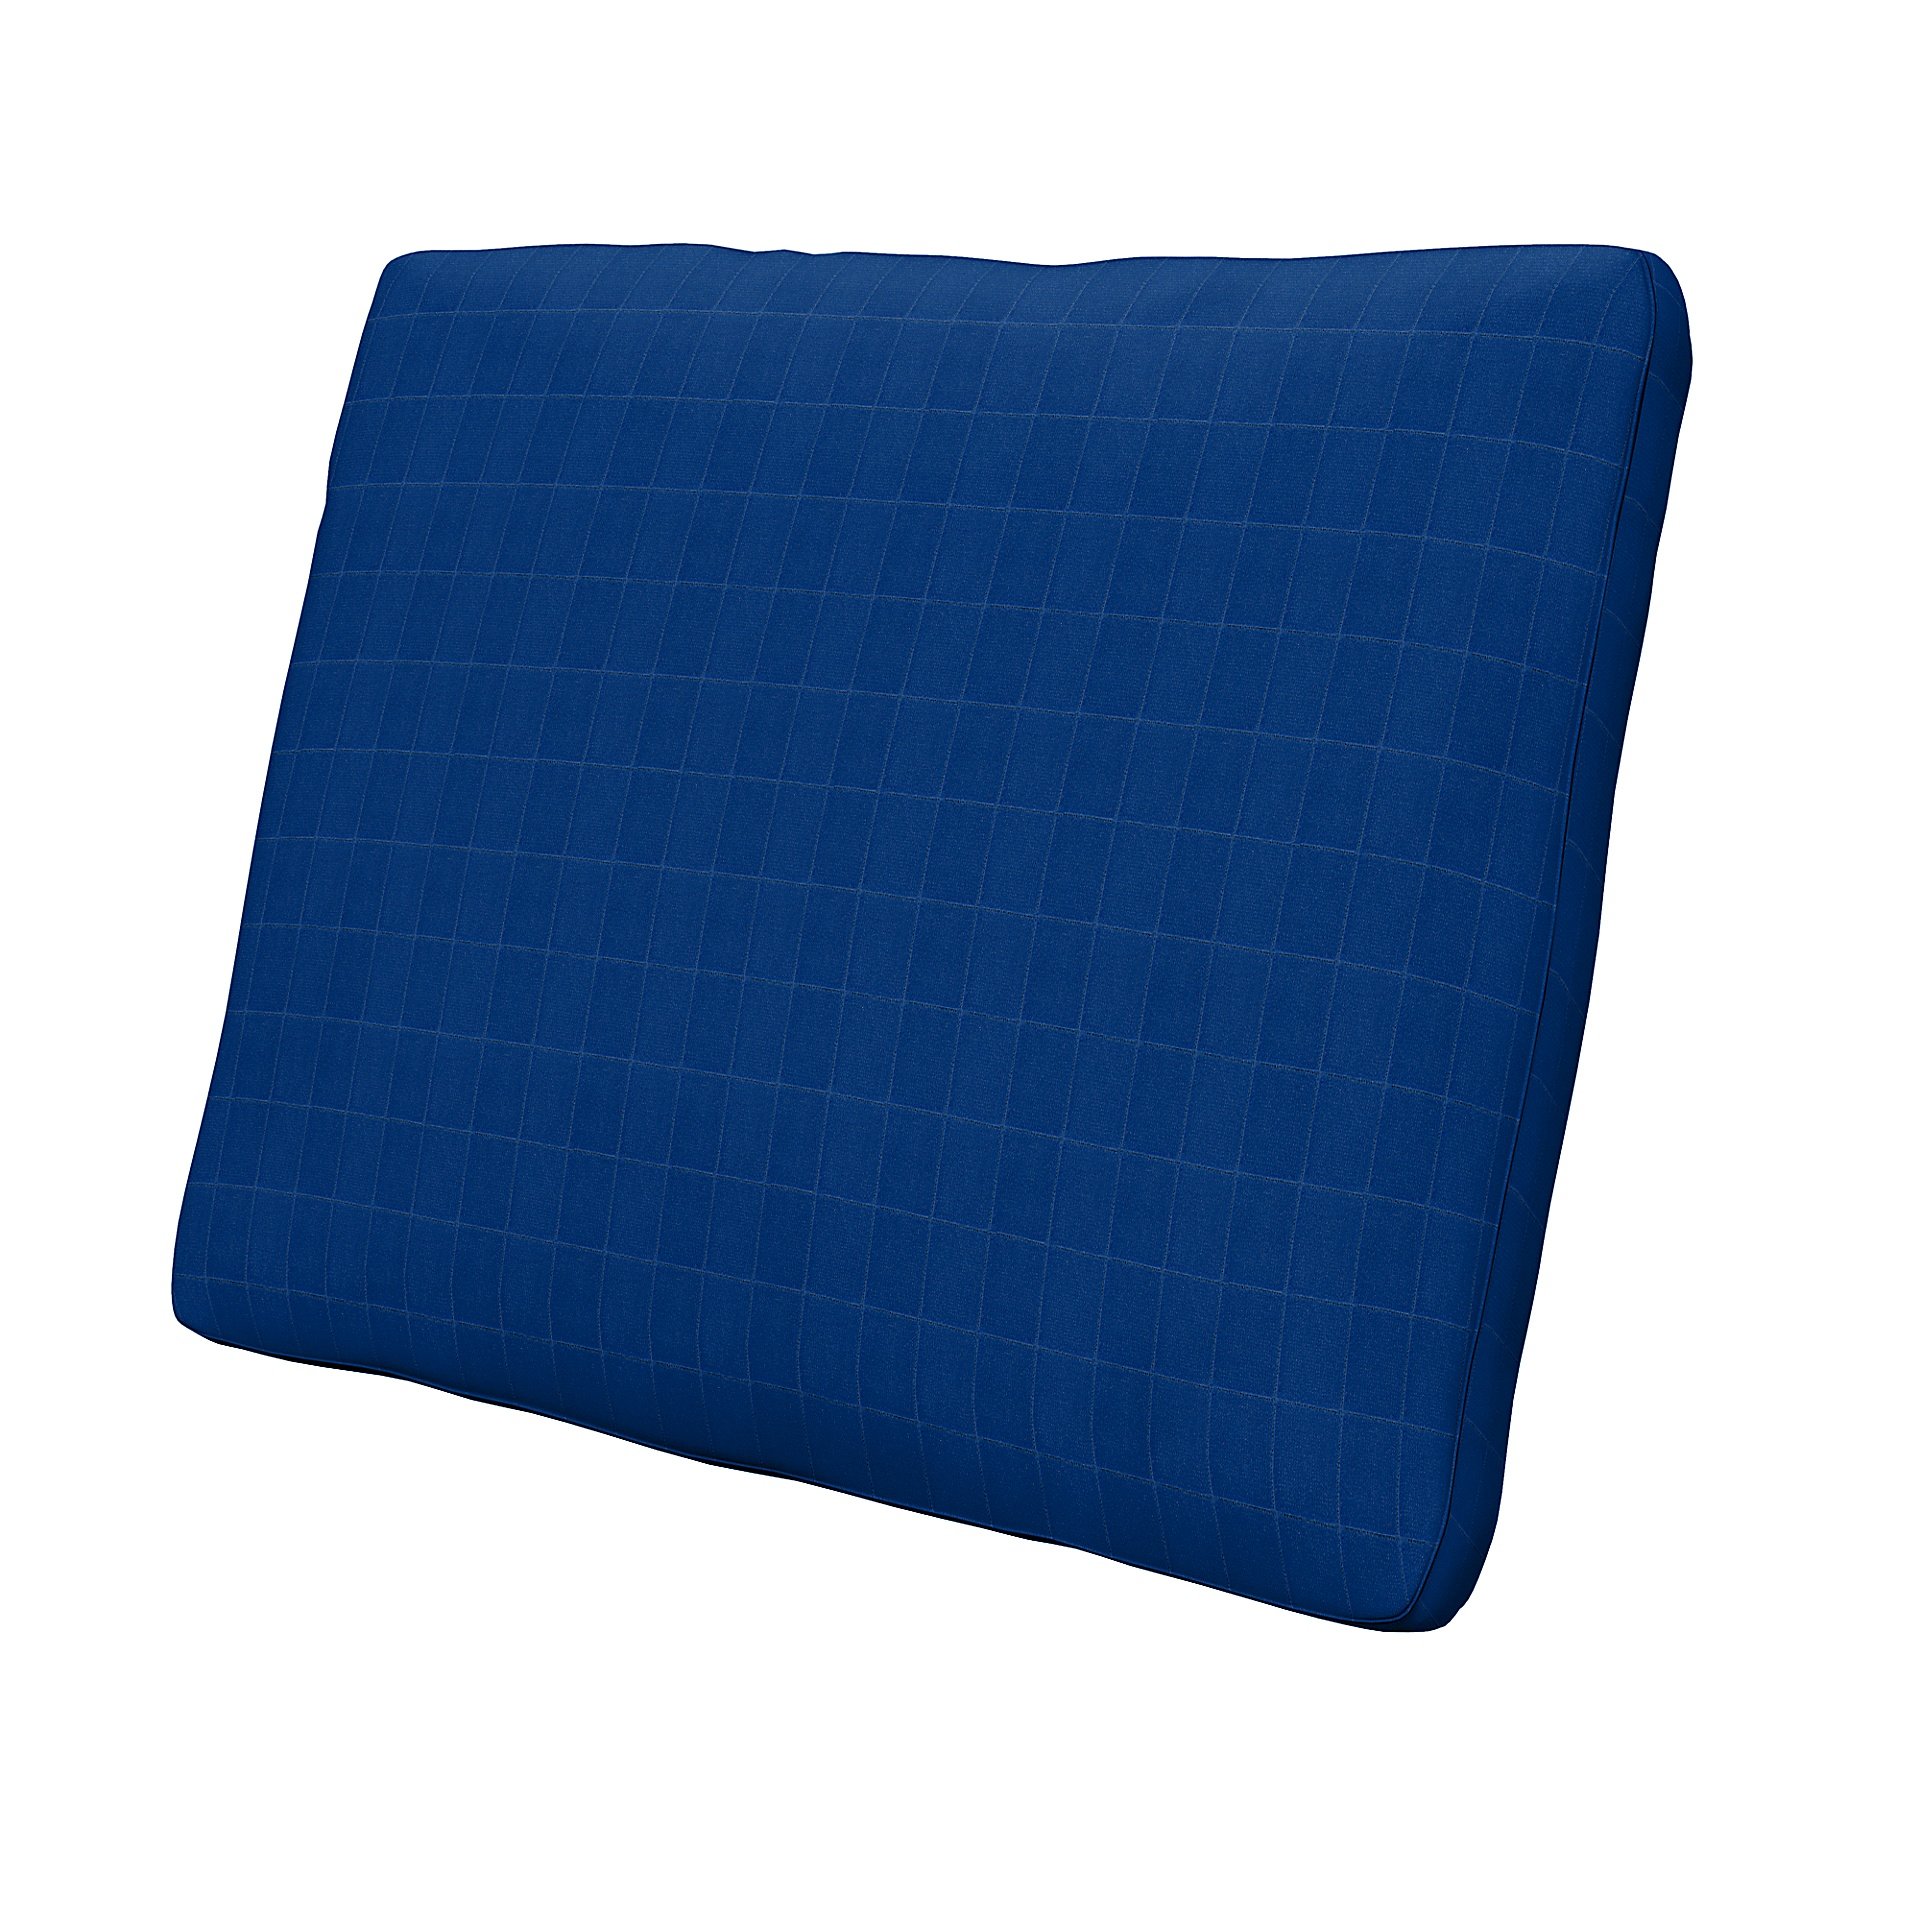 IKEA - Cushion Cover Karlstad 58x48x5 cm, Lapis Blue, Velvet - Bemz